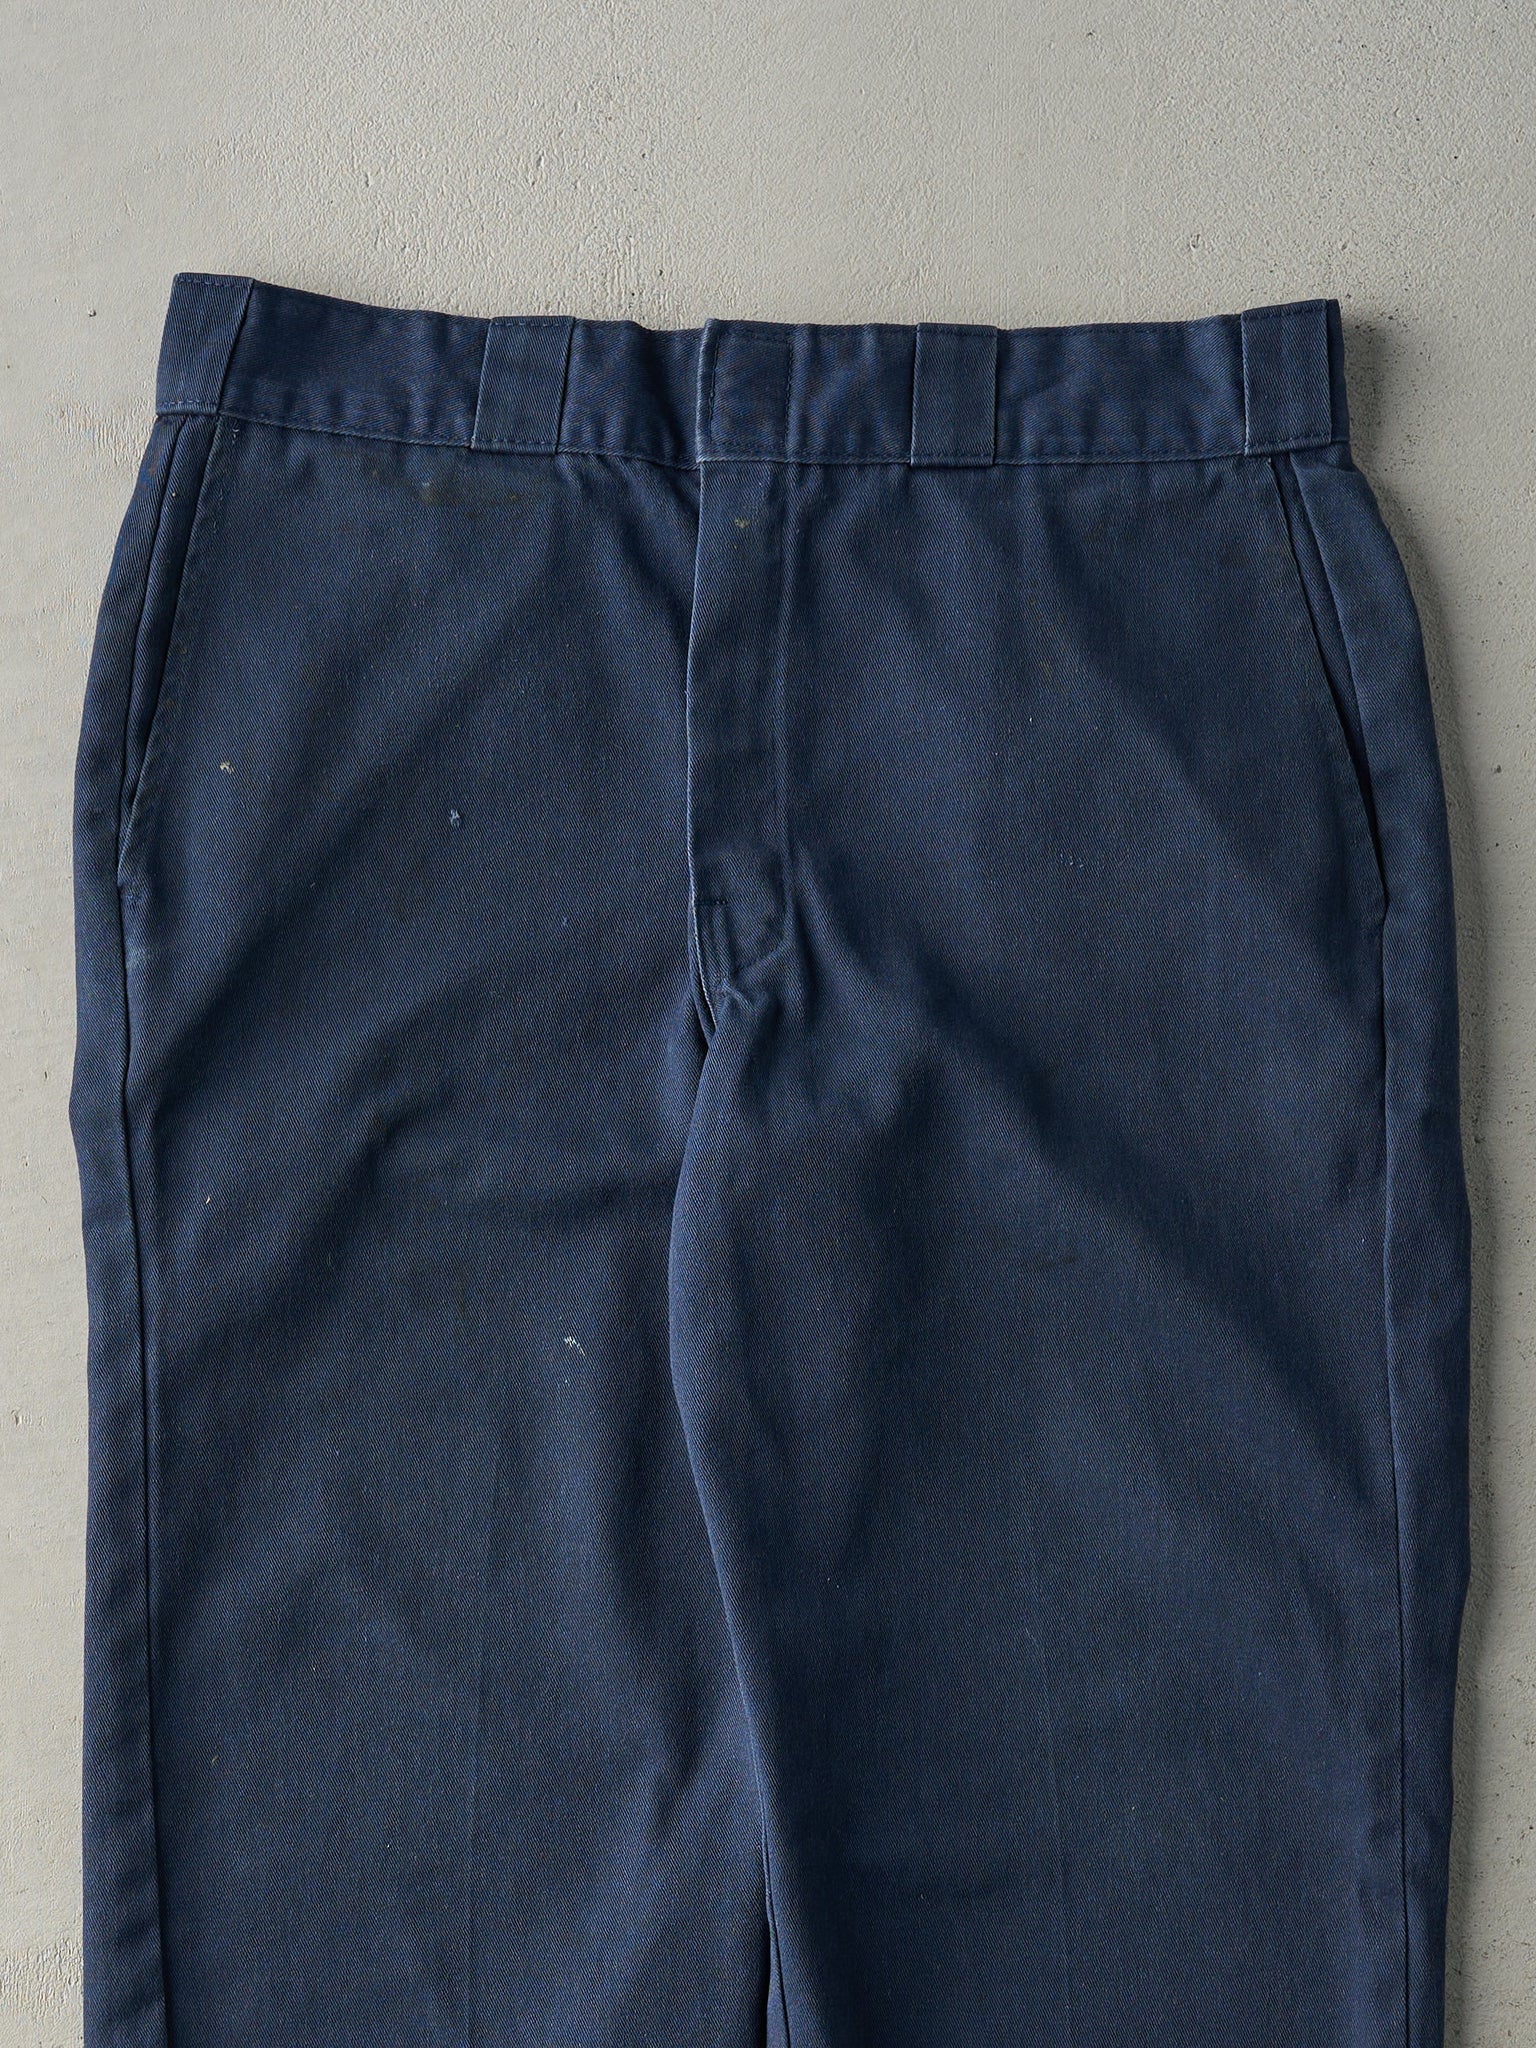 Vintage 90s Navy Blue Dickies Work Pants (34x29)